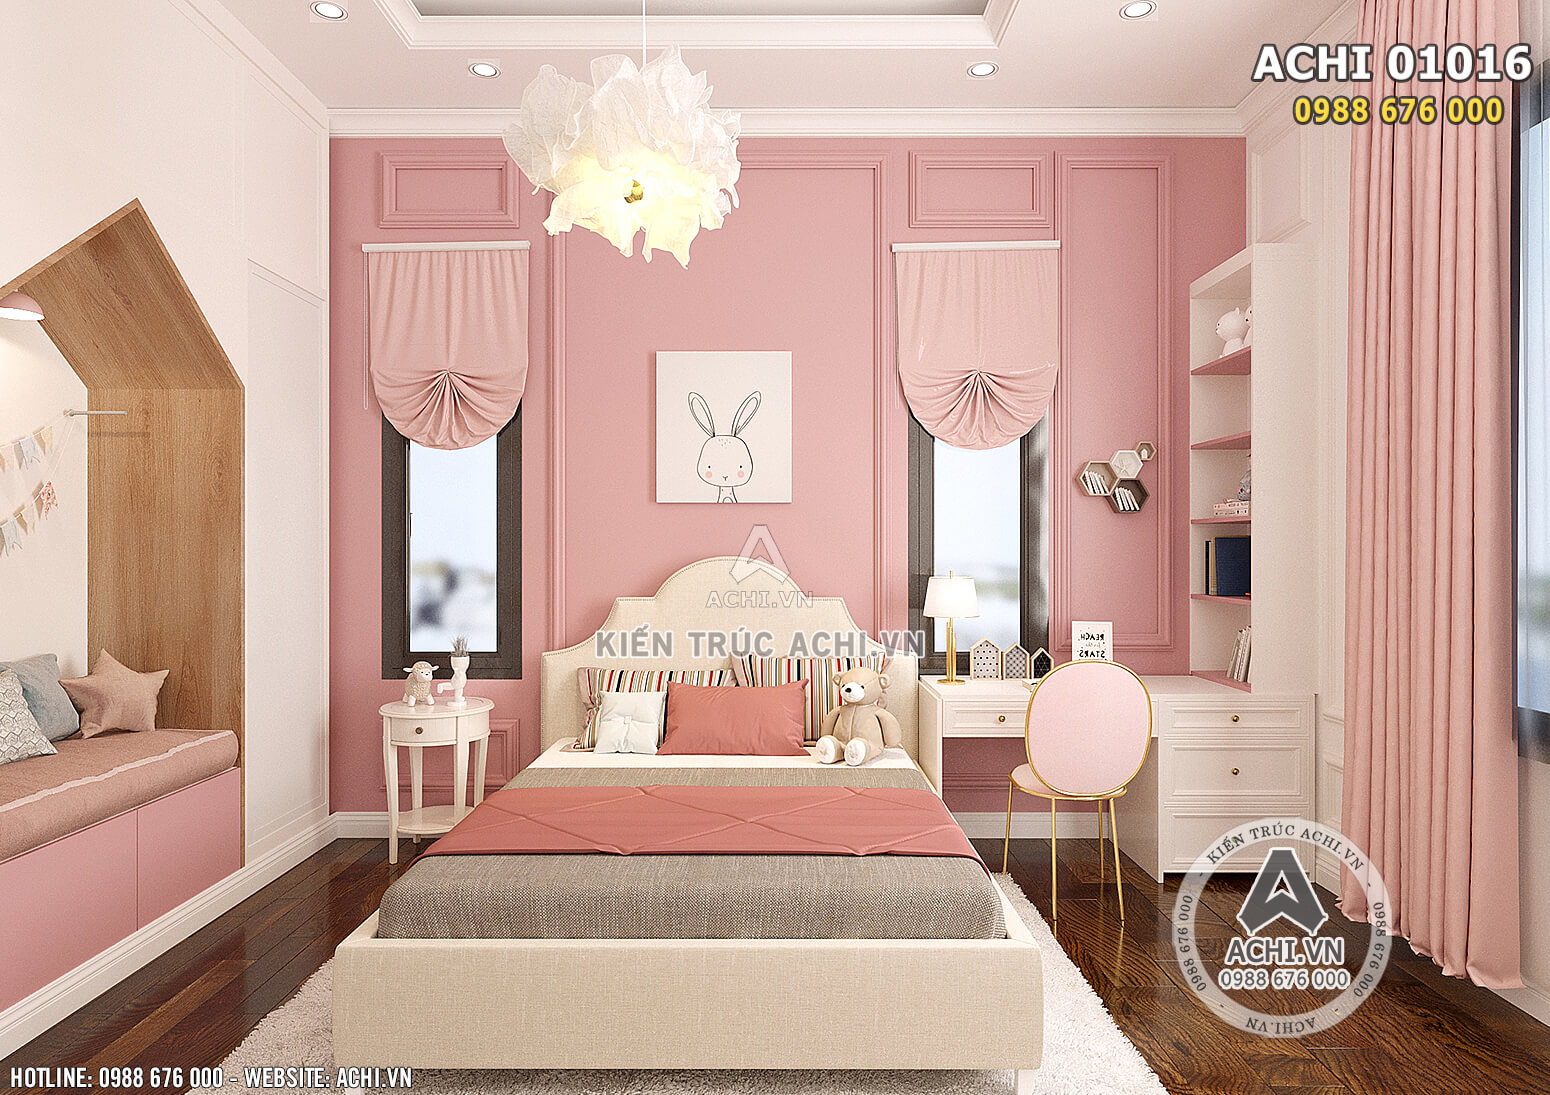 Hình ảnh: Thiết kế nội thất toàn màu hồng cho không gian phòng ngủ cho cô con gái - ACHI 01016